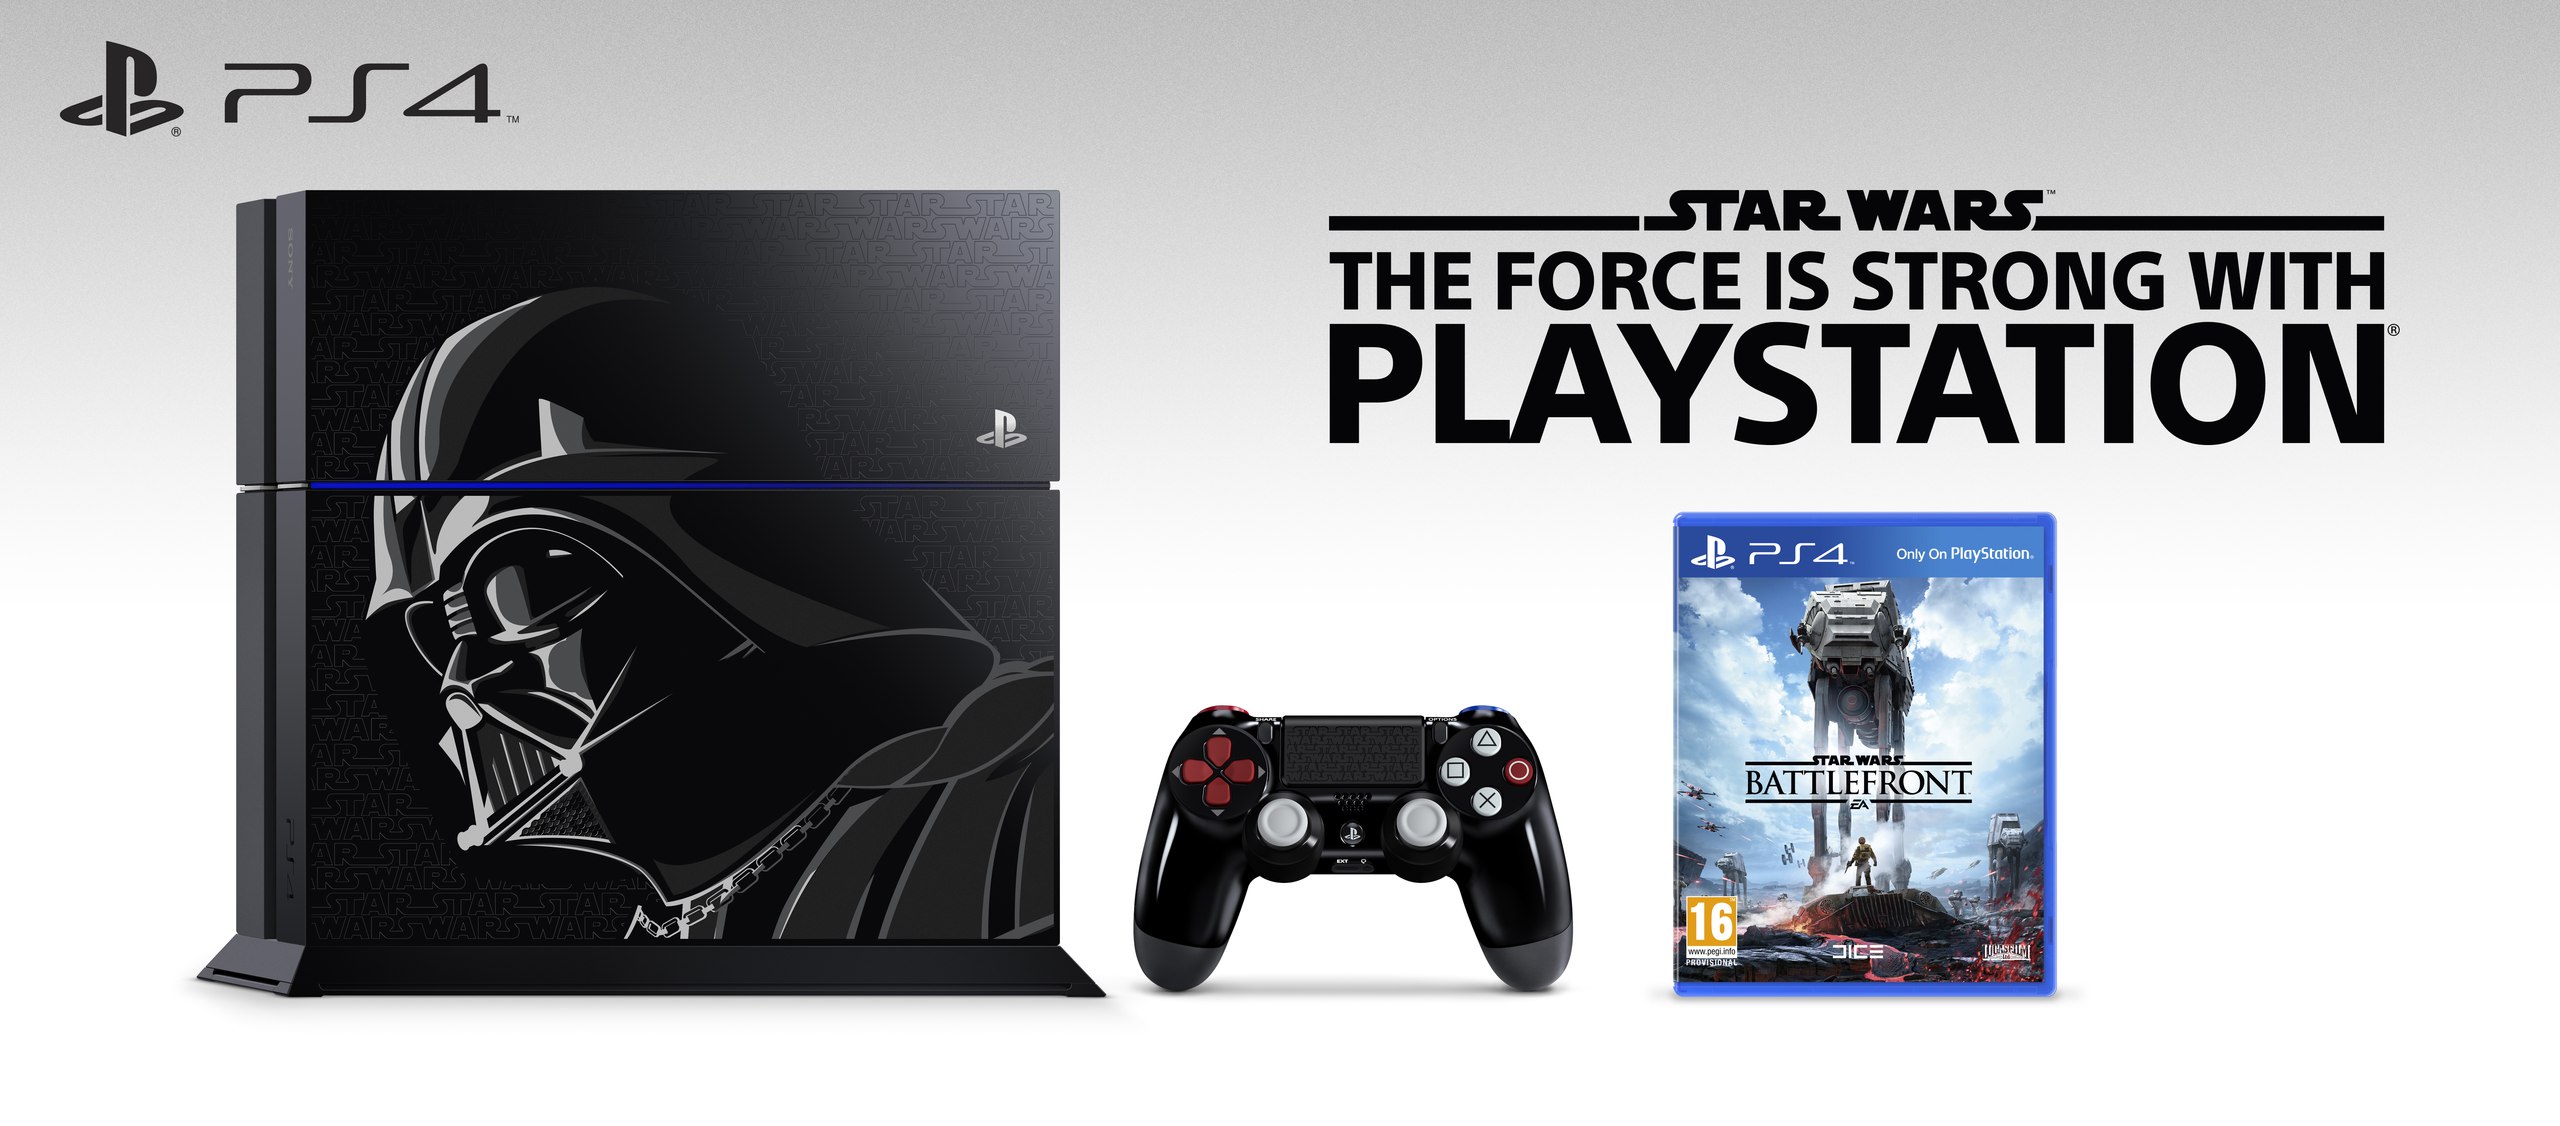 Sony анонсировала Playstation 4 в стиле «Звёздных войн»